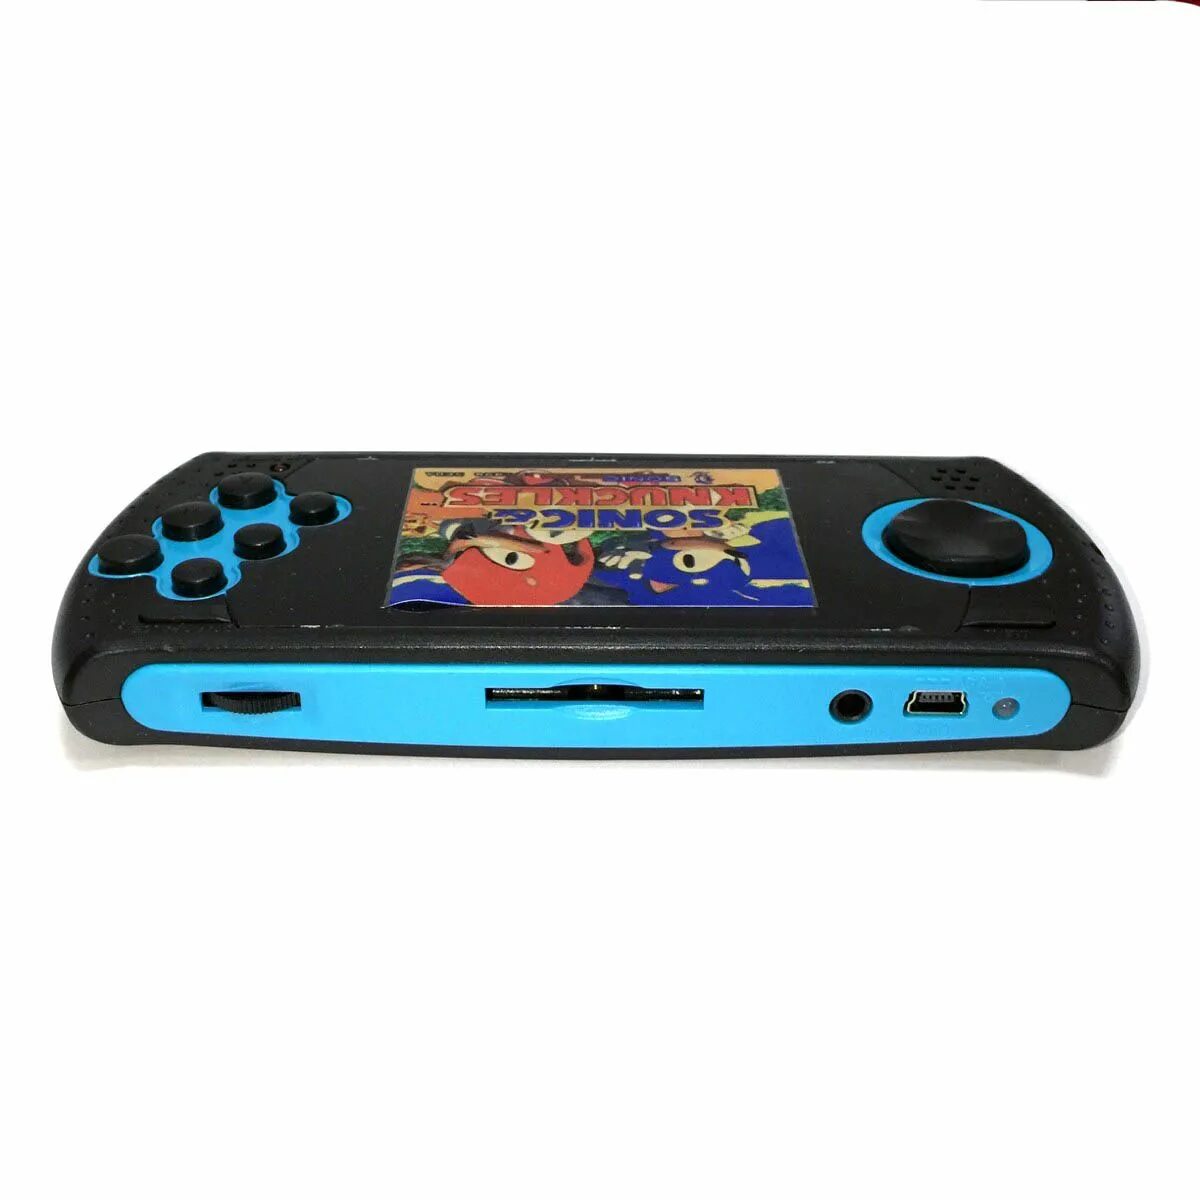 Портативная приставка Mega Drive Portable Arcade. Sega Mega Drive Arcada Ultimate Portable. Портативная Sega Mega Drive Genesis Portable. Sega клоны 2000. Максимально портативный